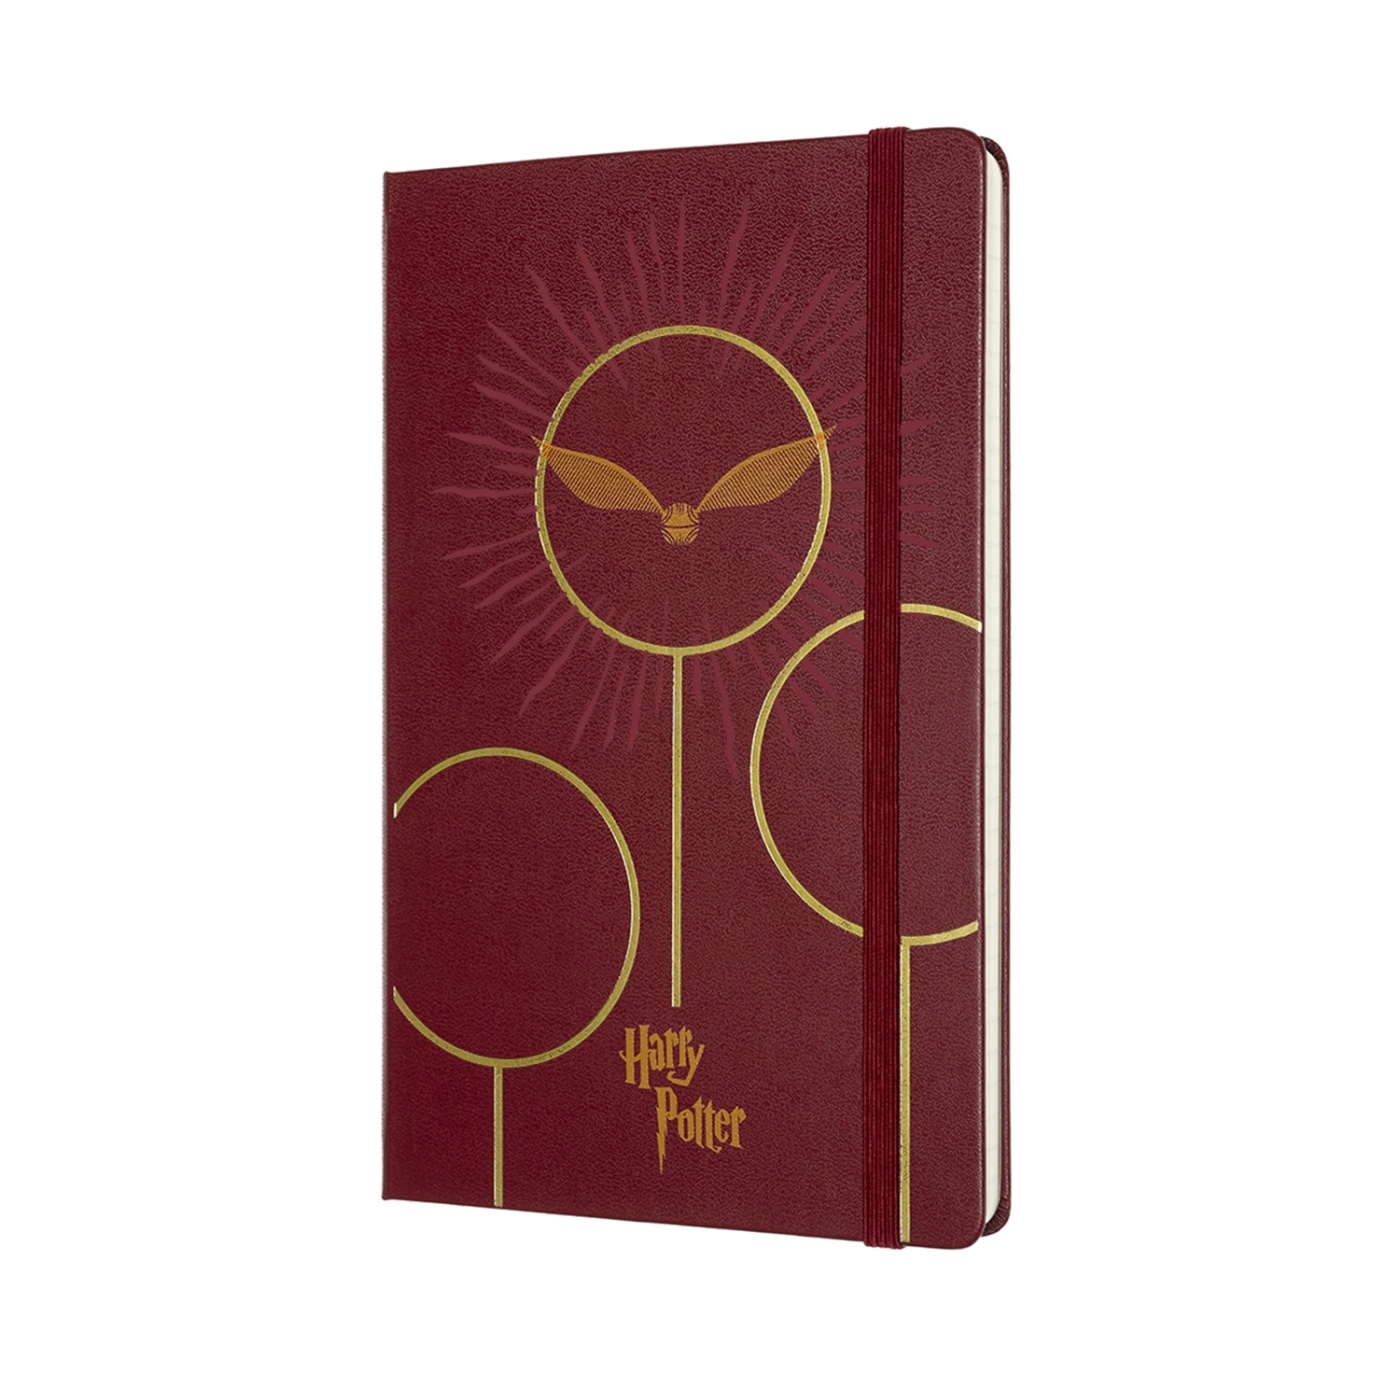 Hardcover Large Harry Potter Bordeaux Red in der Gruppe Papier & Blöcke / Schreiben und Notizen / Notizbücher bei Pen Store (100402)